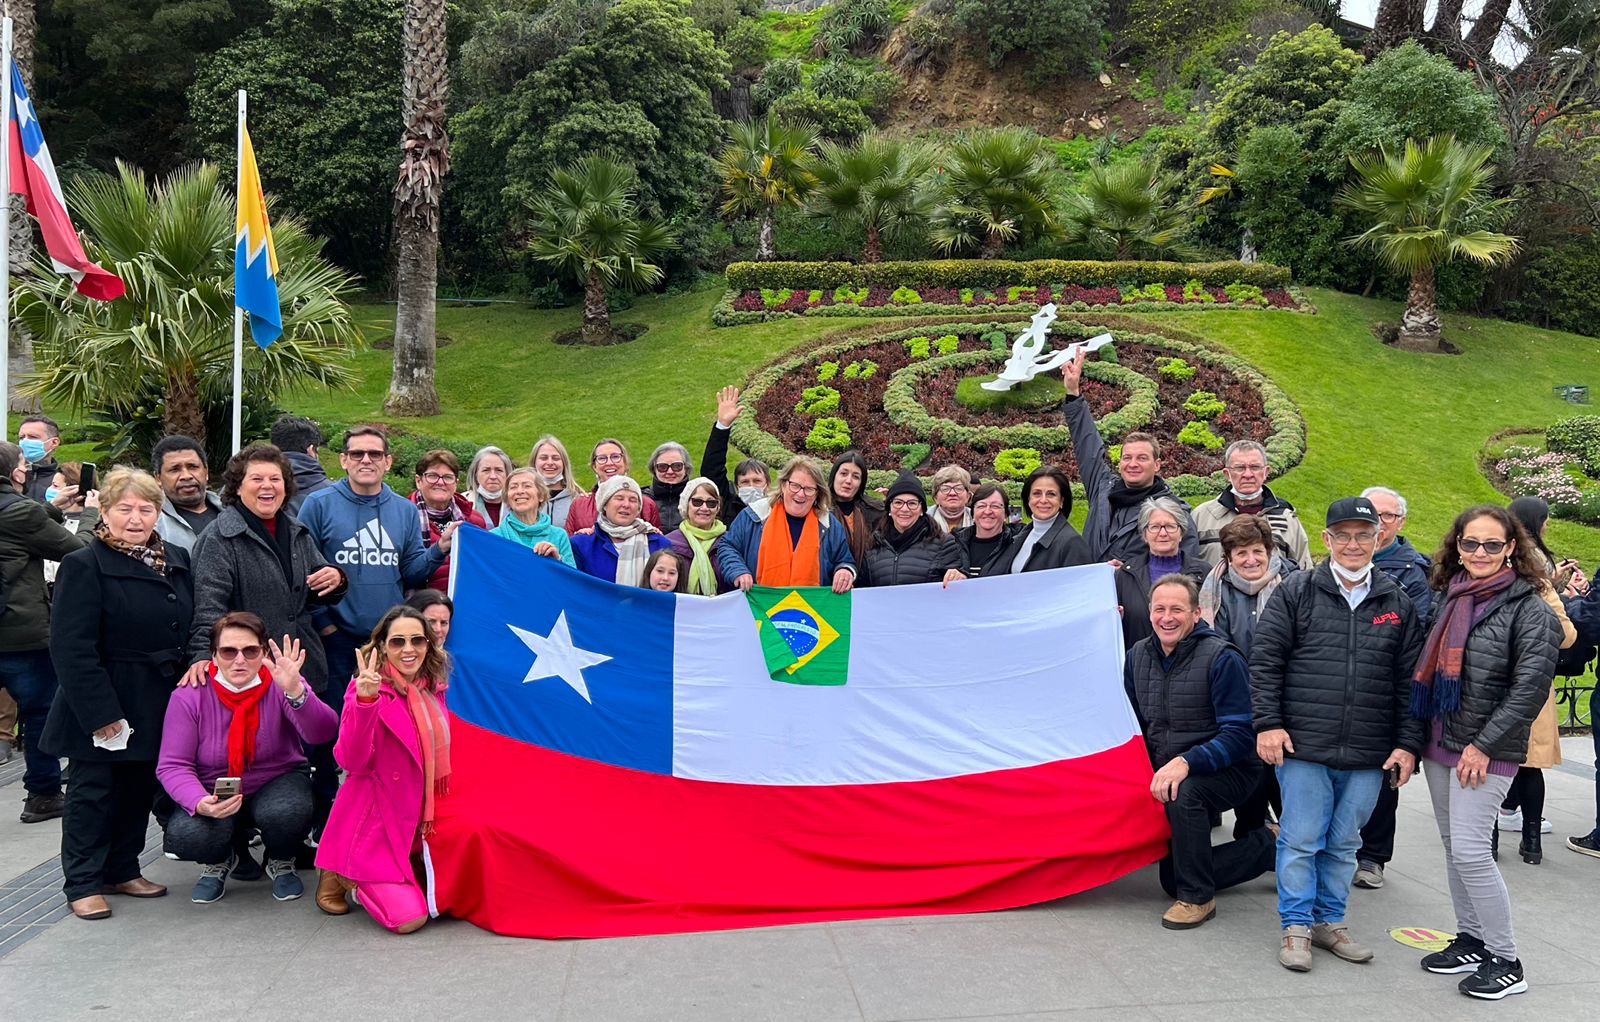 Turistas retidos no Chile devem voltar nesta semana